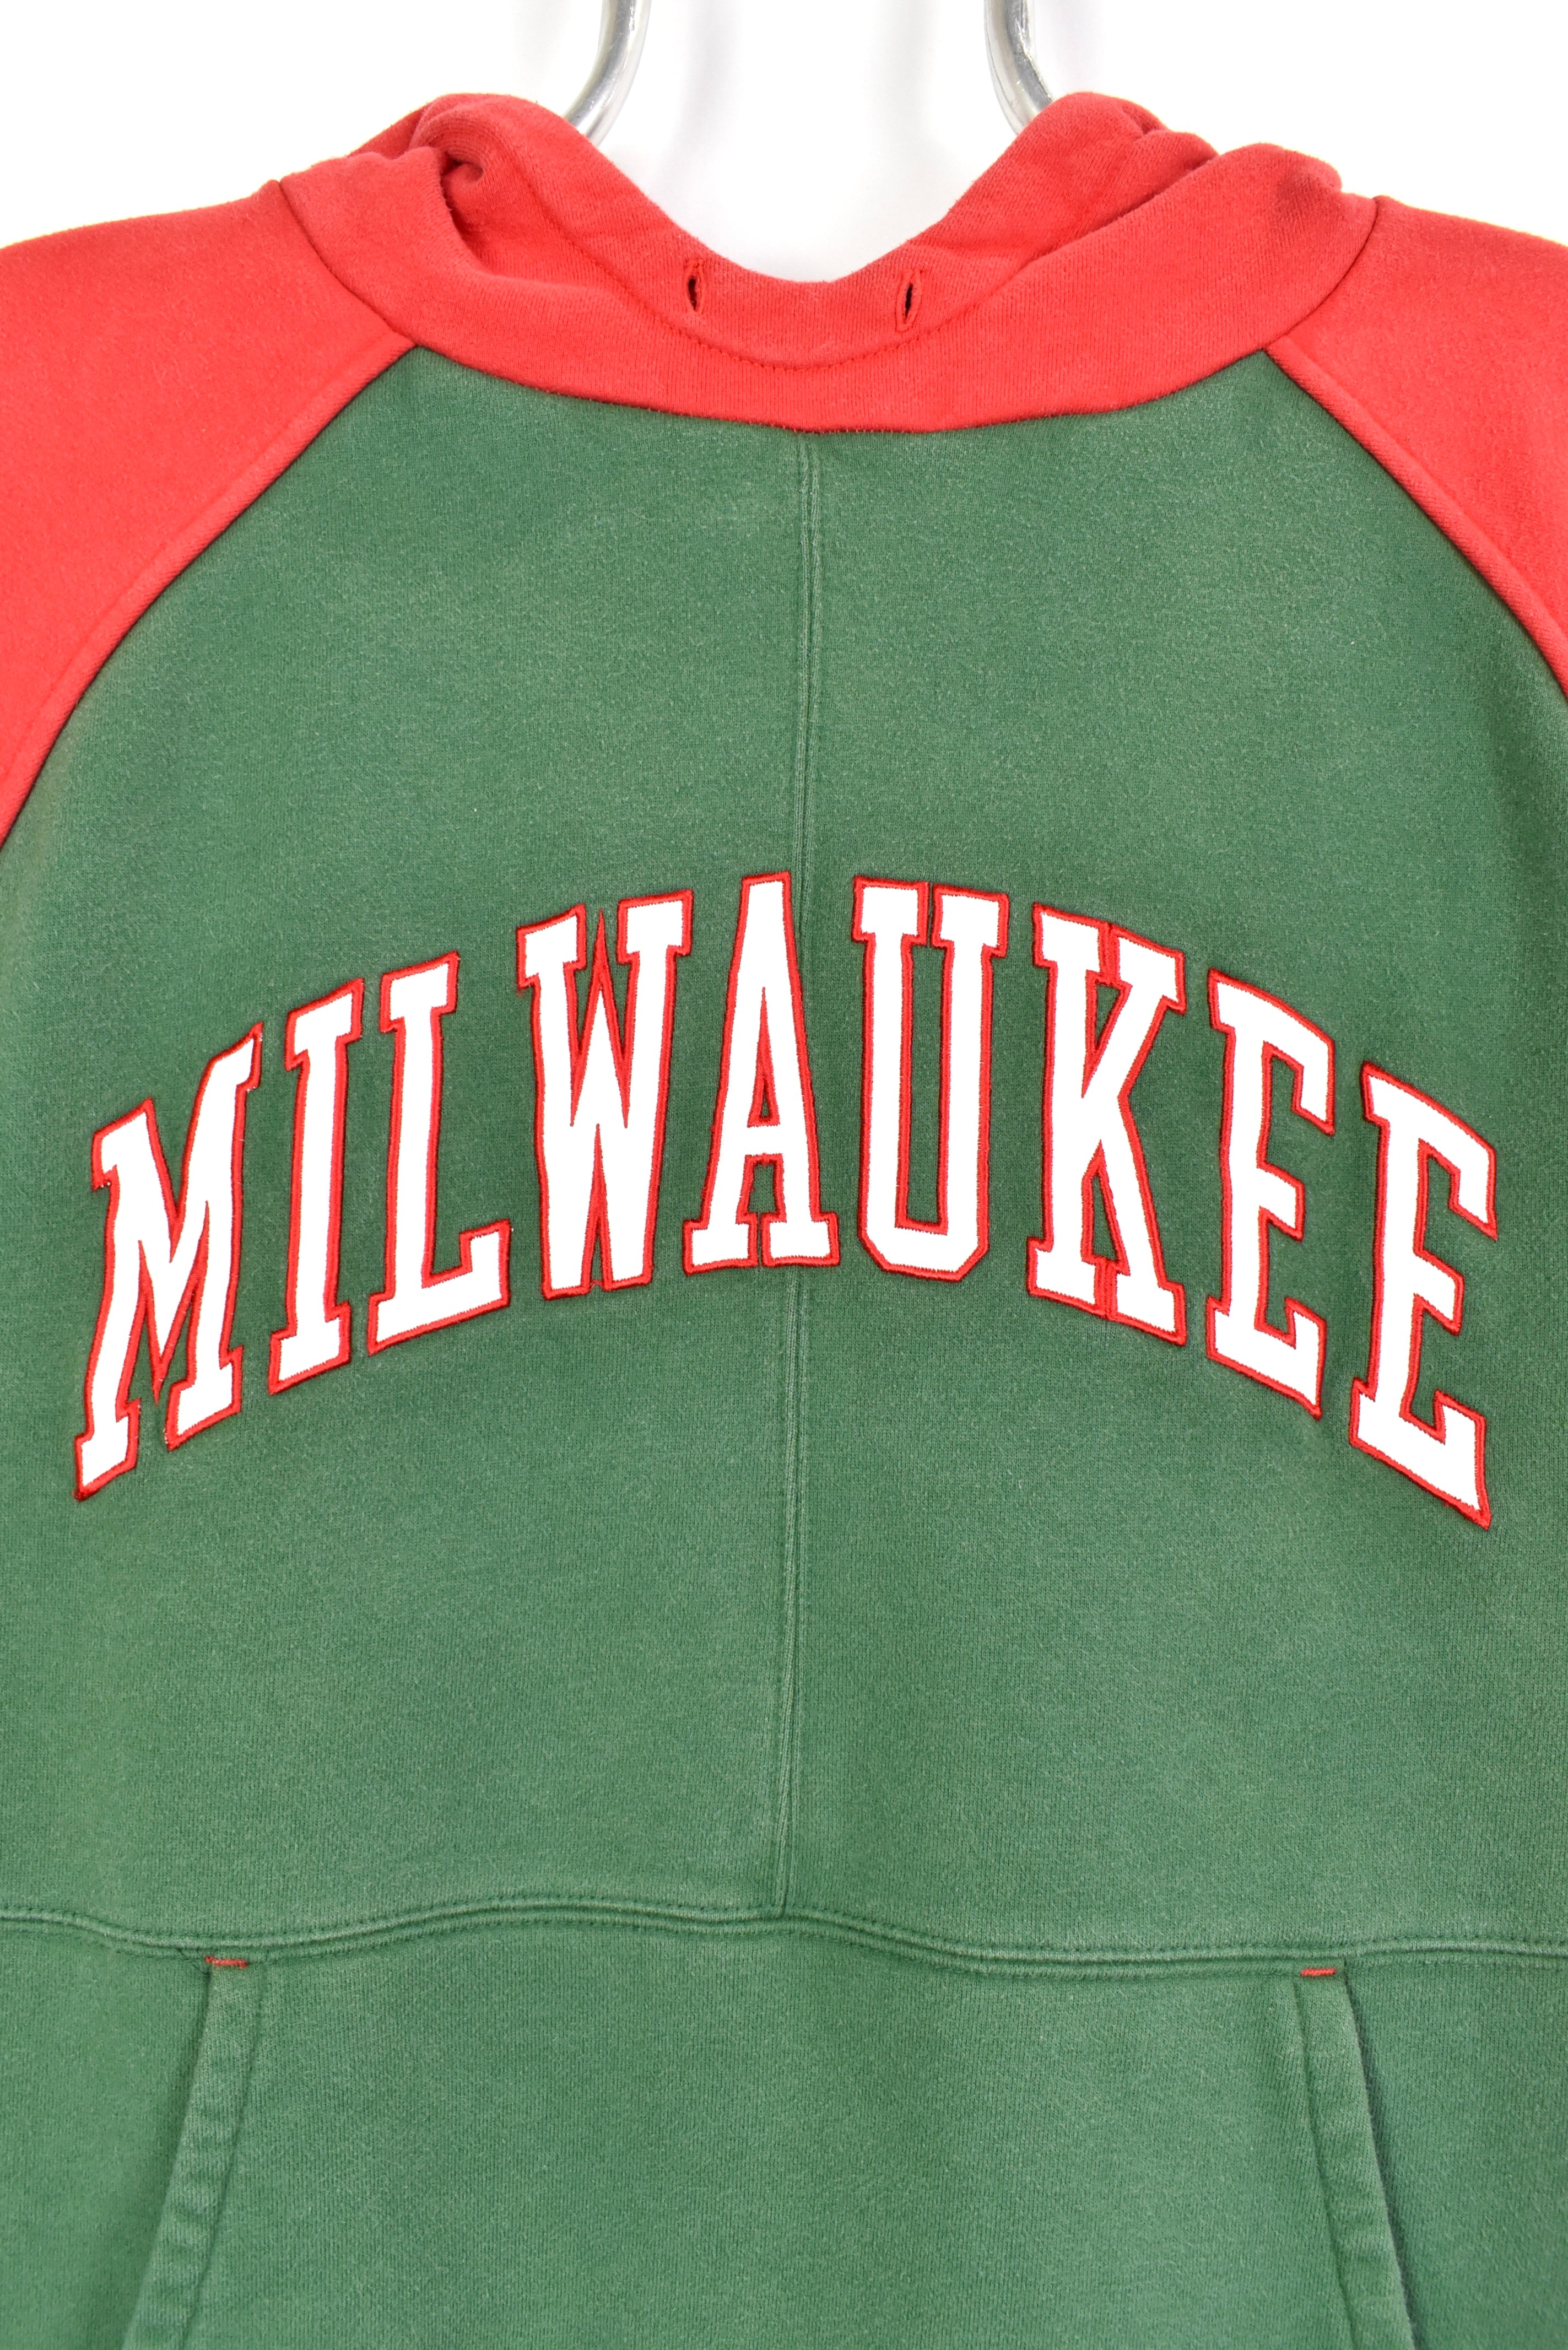 Vintage Milwaukee Bucks hoodie, NBA embroidered sweatshirt - large, green PRO SPORT